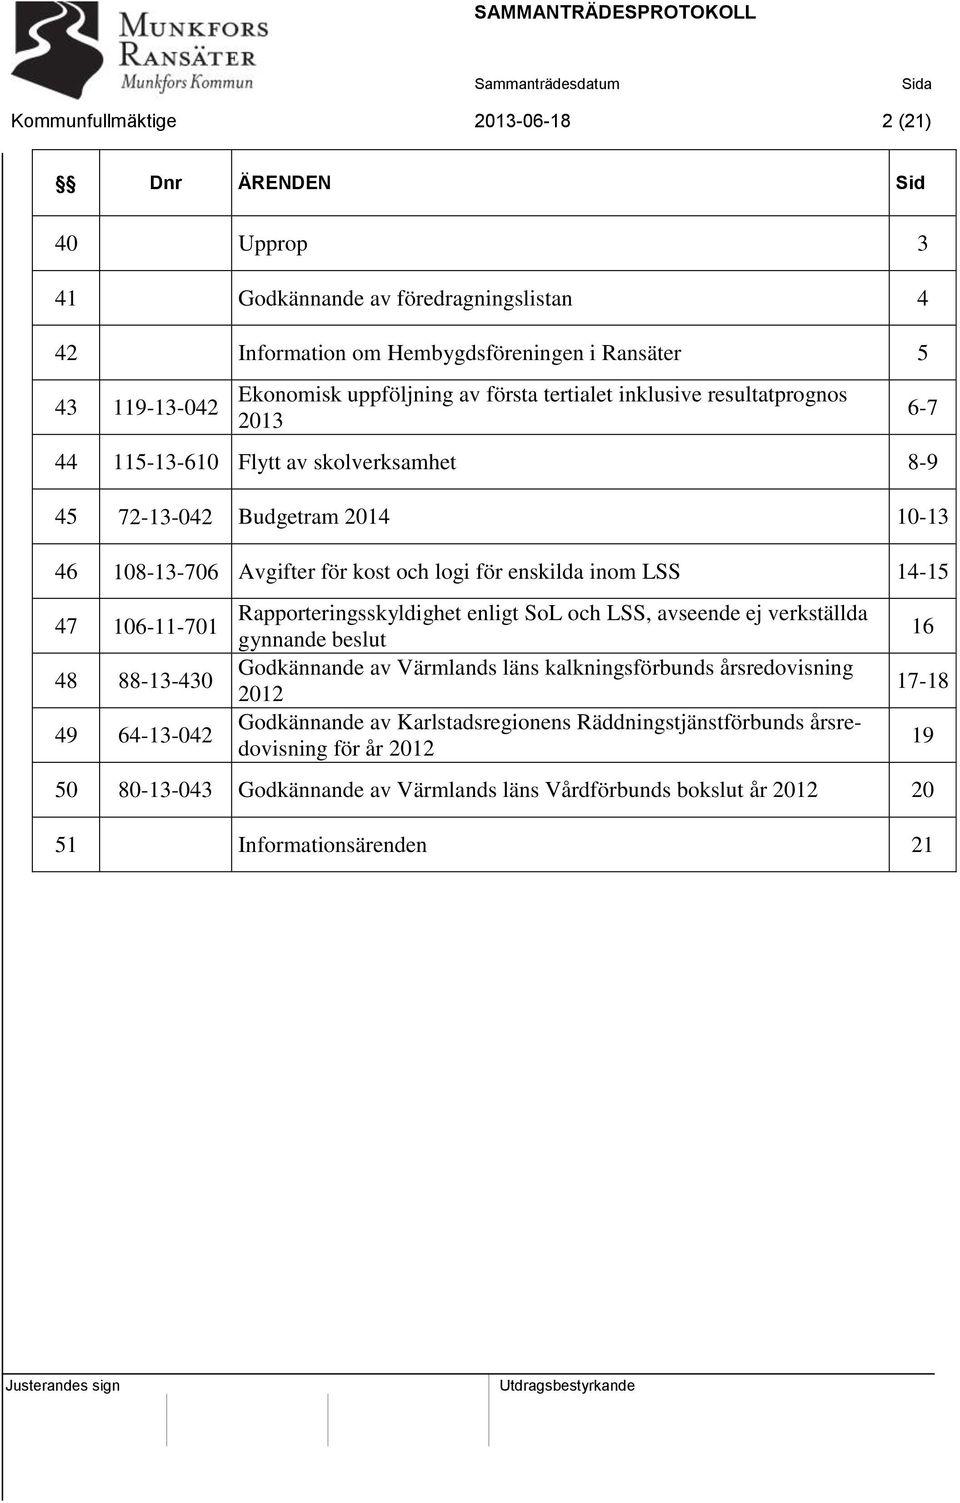 47 106-11-701 48 88-13-430 49 64-13-042 Rapporteringsskyldighet enligt SoL och LSS, avseende ej verkställda gynnande beslut Godkännande av Värmlands läns kalkningsförbunds årsredovisning 2012